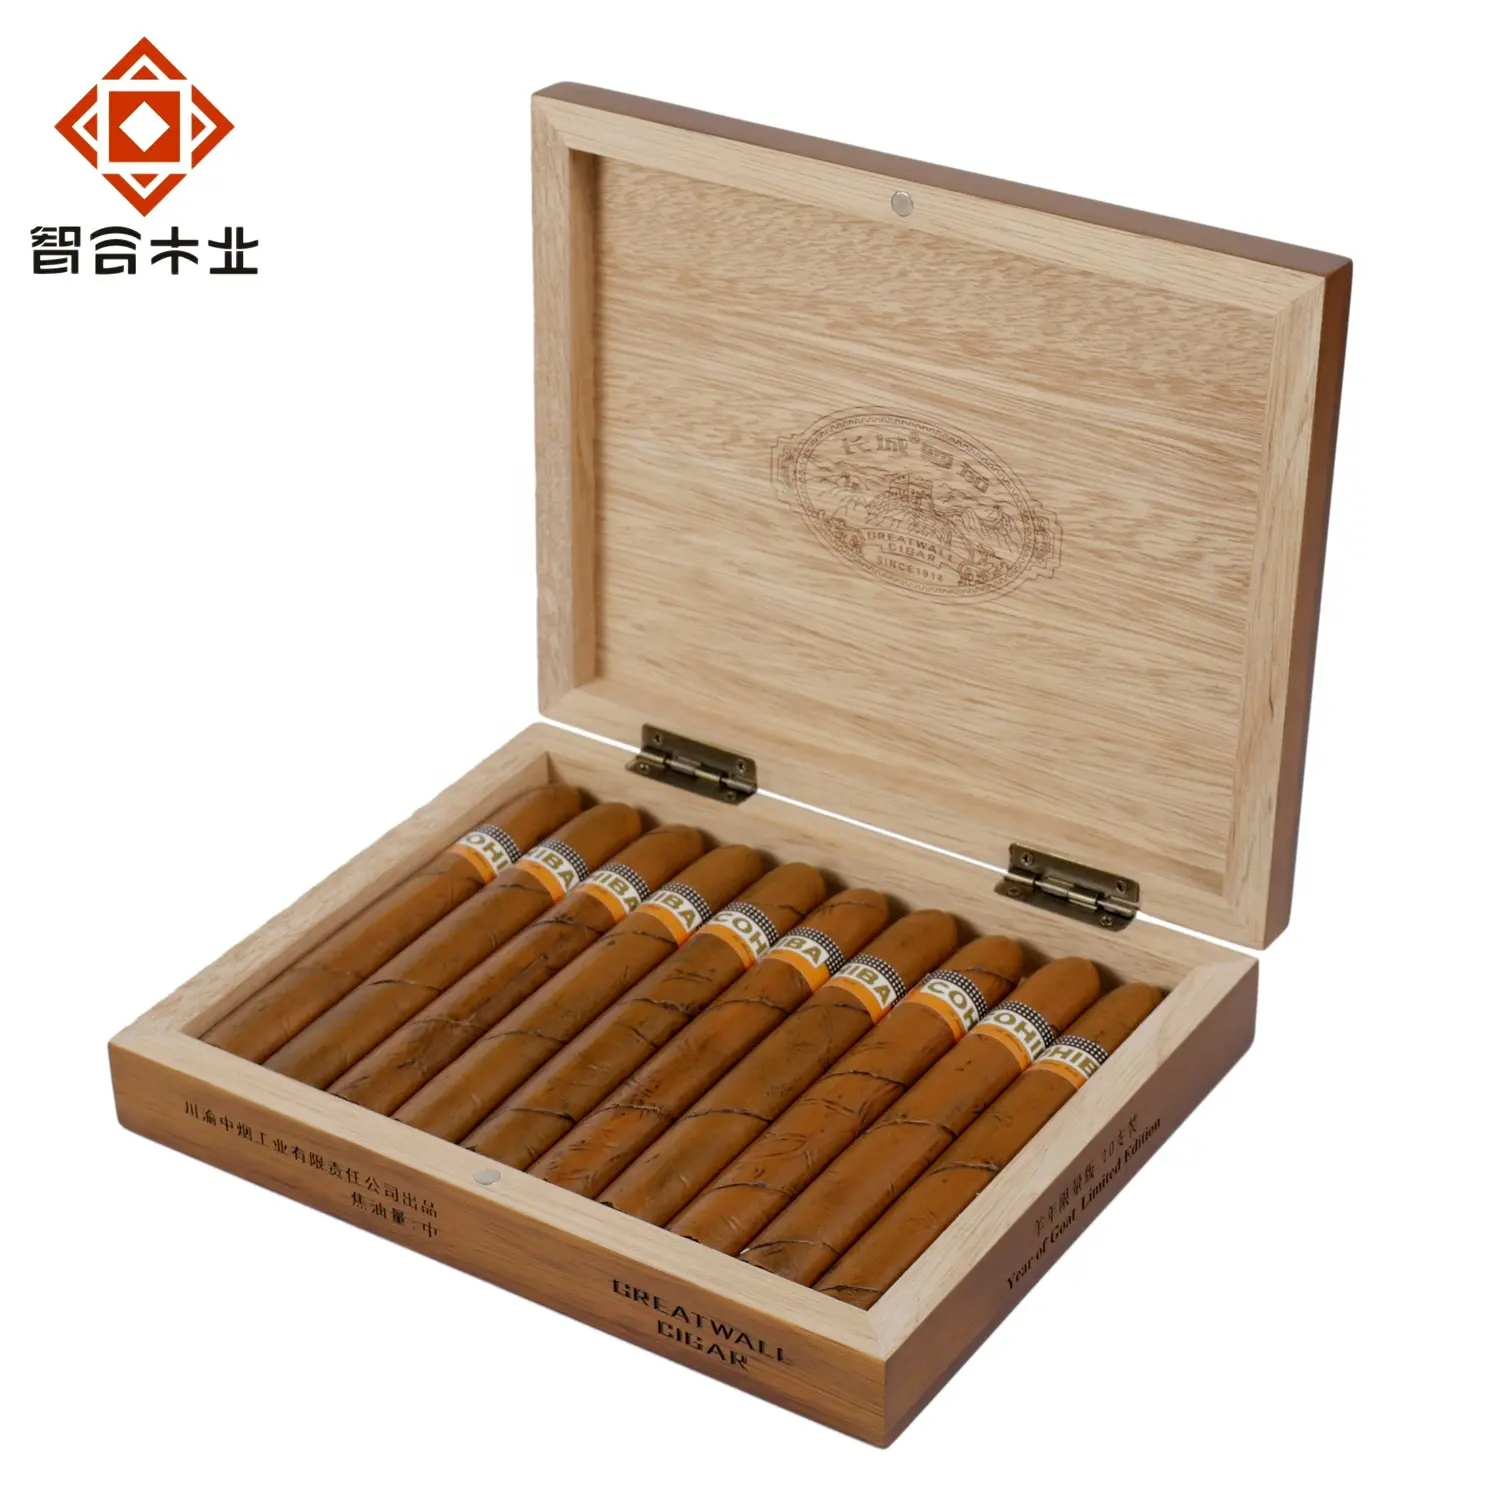 Китайская фабрика, оптовая продажа, лидер продаж, роскошные деревянные товары, прямоугольный контейнер для хранения сигарет на заказ